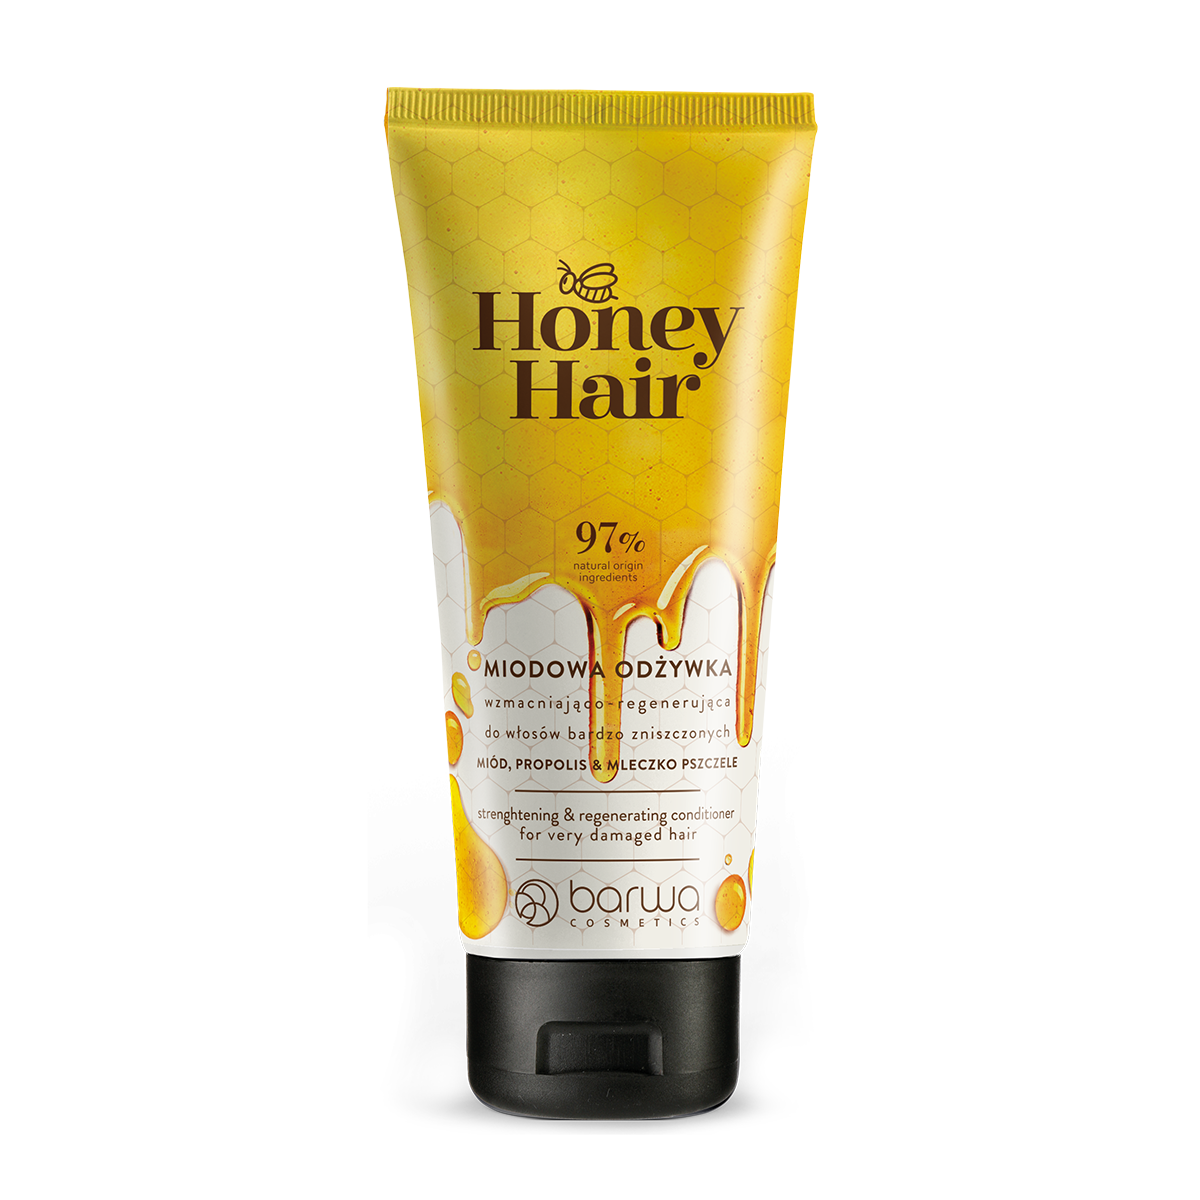 Укрепляющий и регенерирующий кондиционер для волос Barwa Honey Hair, 200 мл